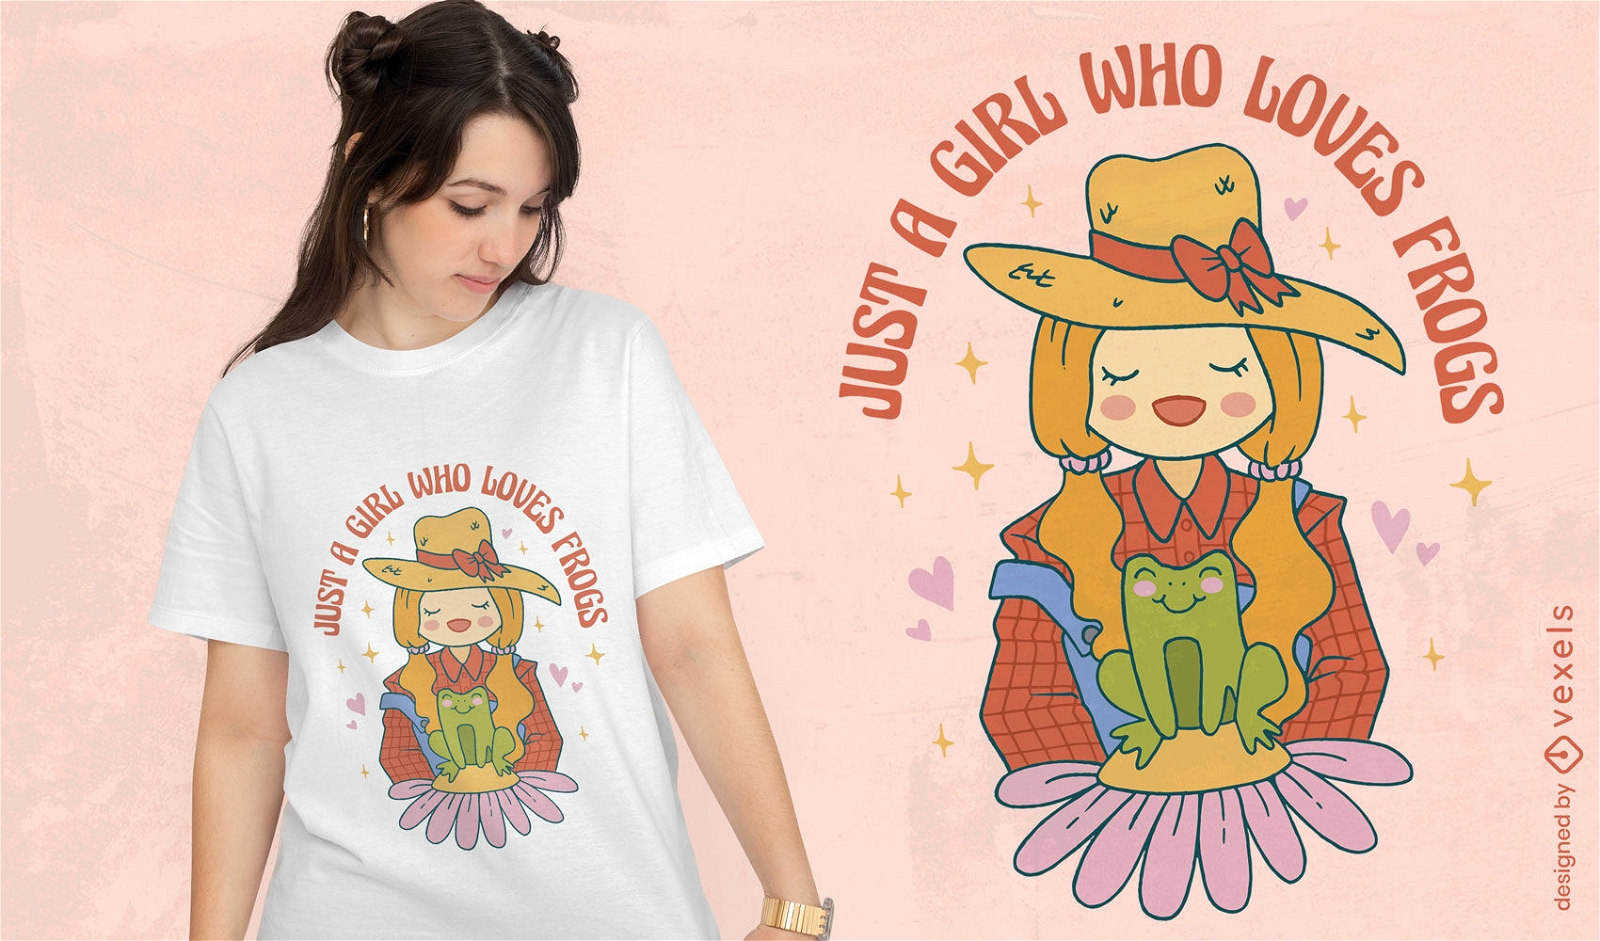 Girl who loves frogs t-shirt design